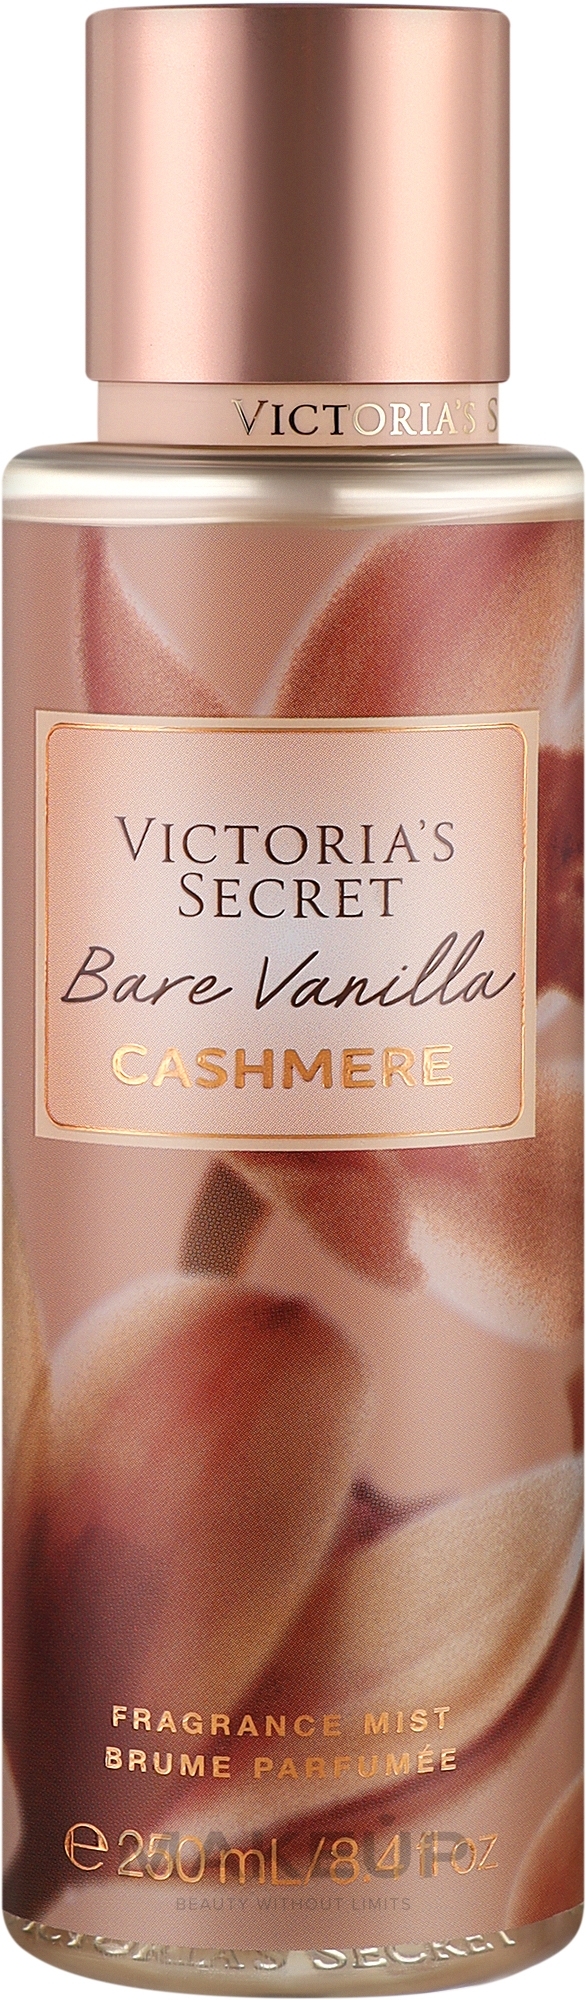 Victoria's Secret Bare Vanilla Cashmere - Парфюмированный мист для тела — фото 250ml